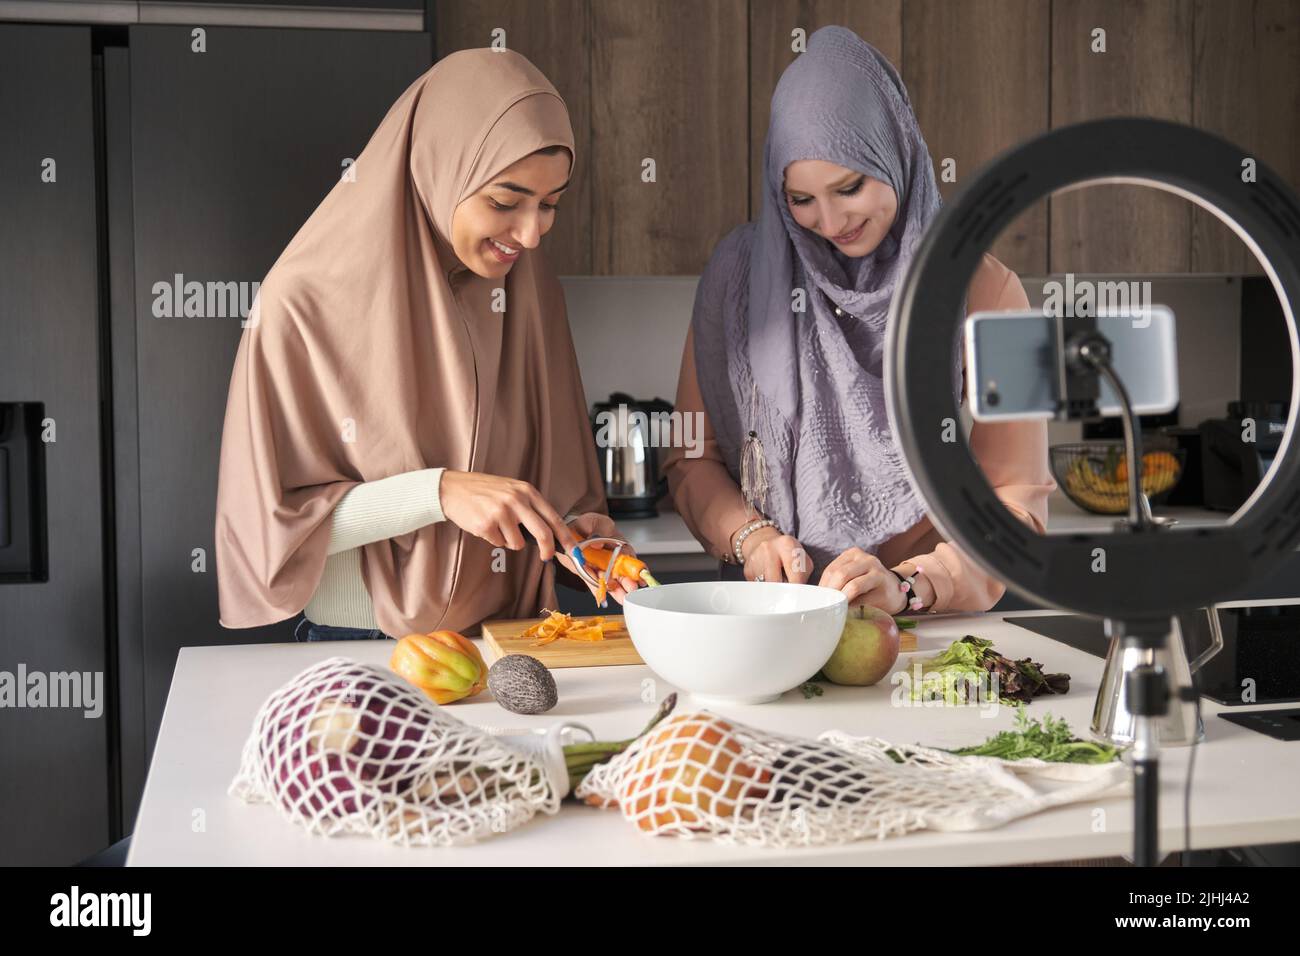 Deux influenceurs musulmans tranchant, hachant et épluchant des légumes dans la cuisine. Banque D'Images